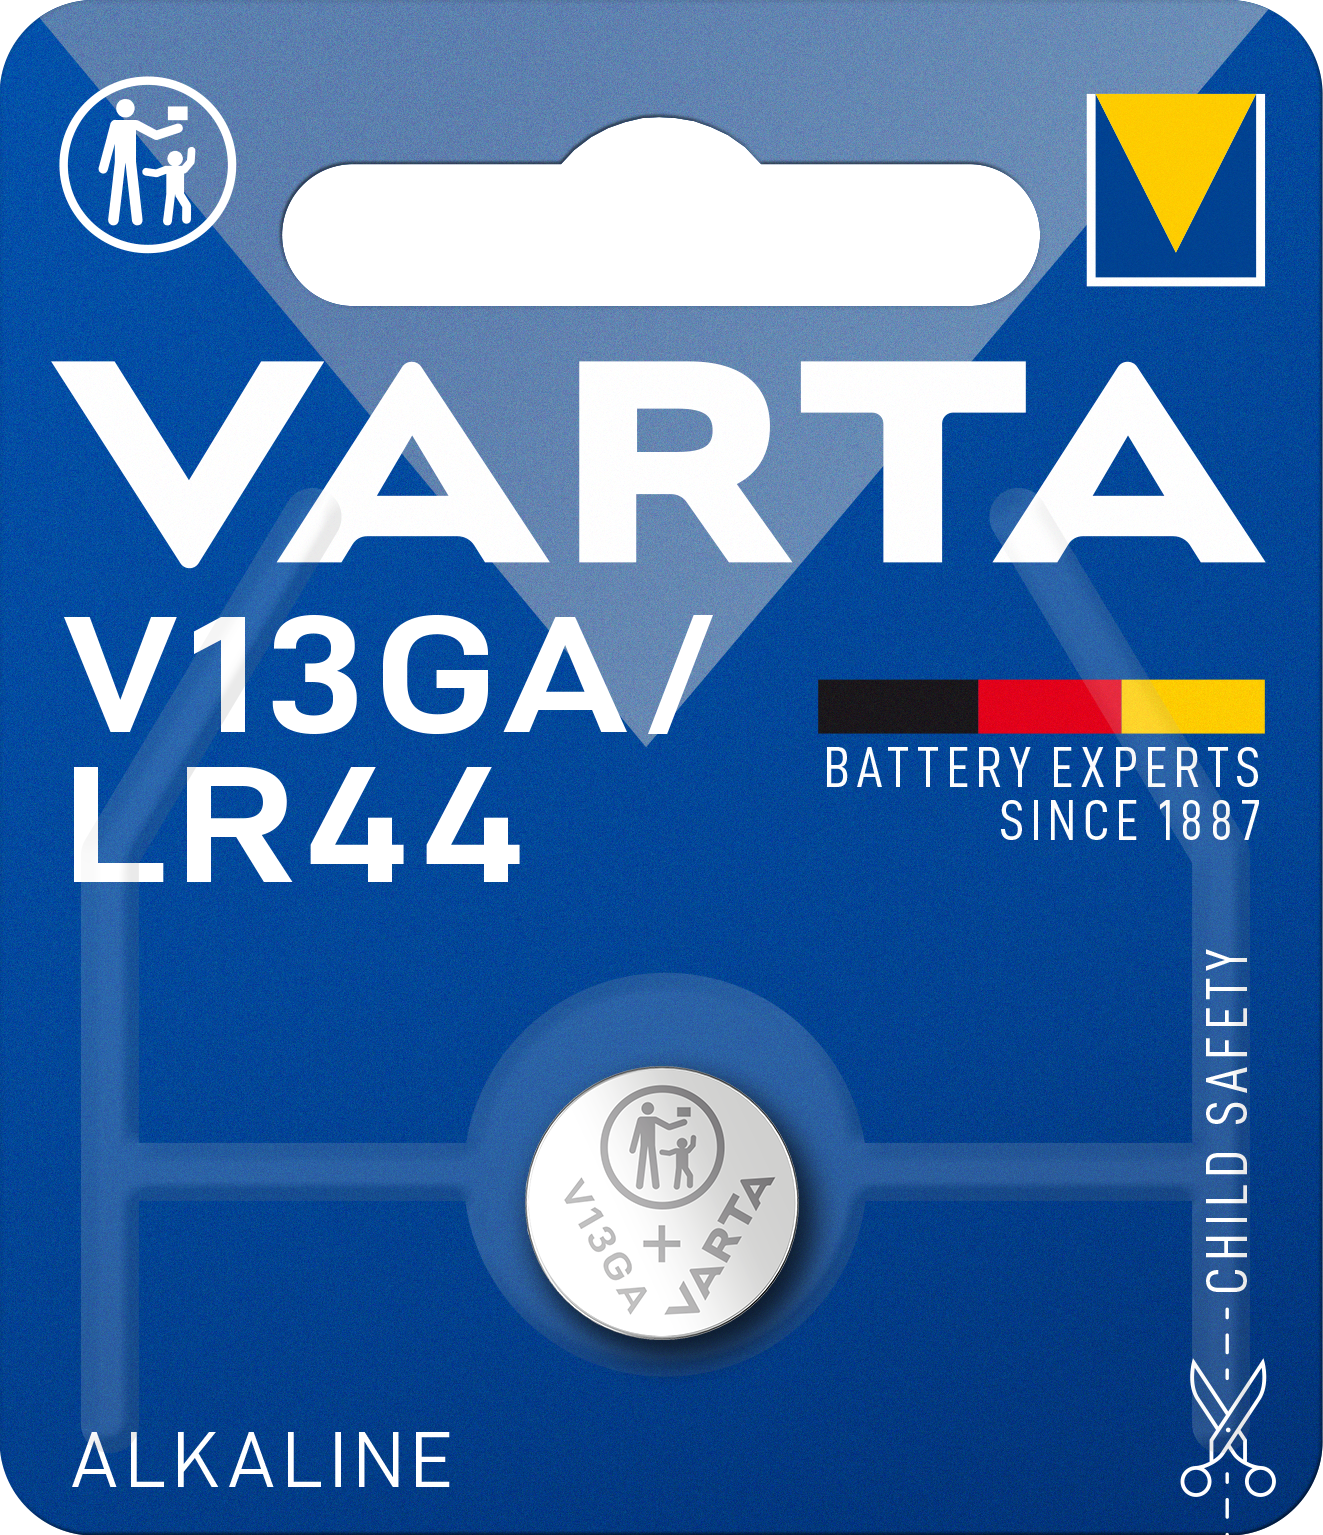 Батарейка Varta V13 GA Bli 1 Alkaline, 1 шт. (4276101401) - фото 1